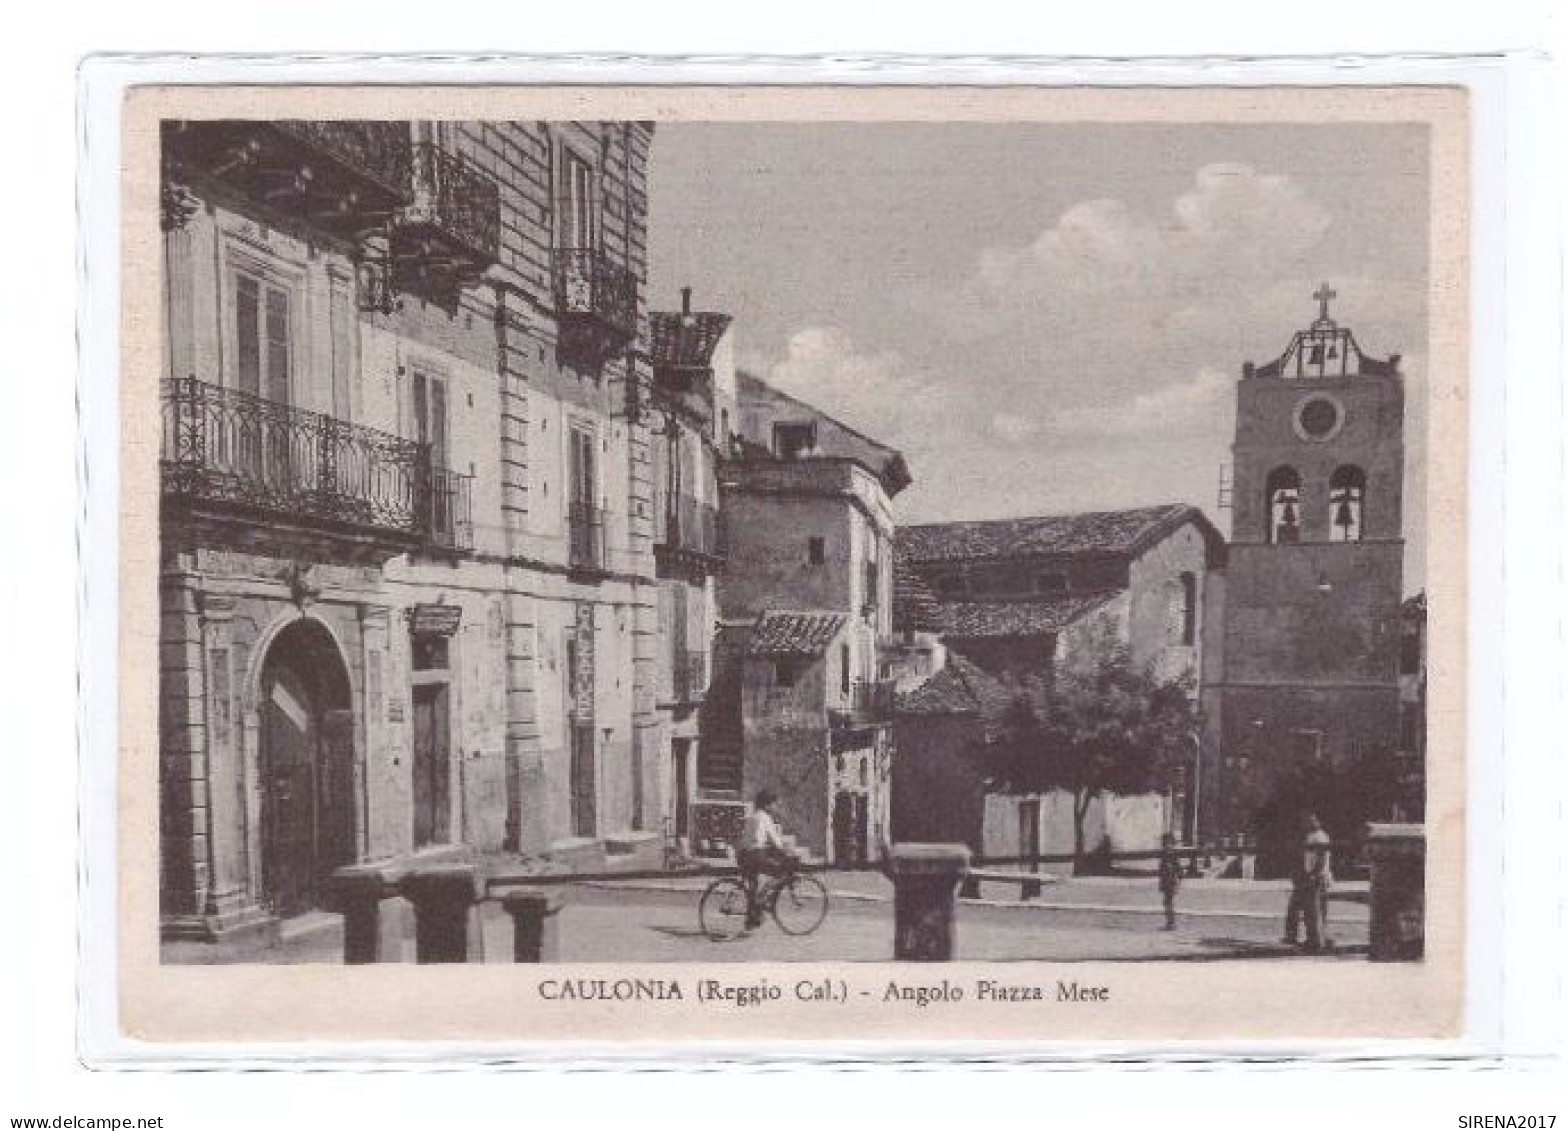 CAULONIA - ANGOLO PIAZZA MESE - REGGIO CALABRIA - VIAGGIATA - Reggio Calabria